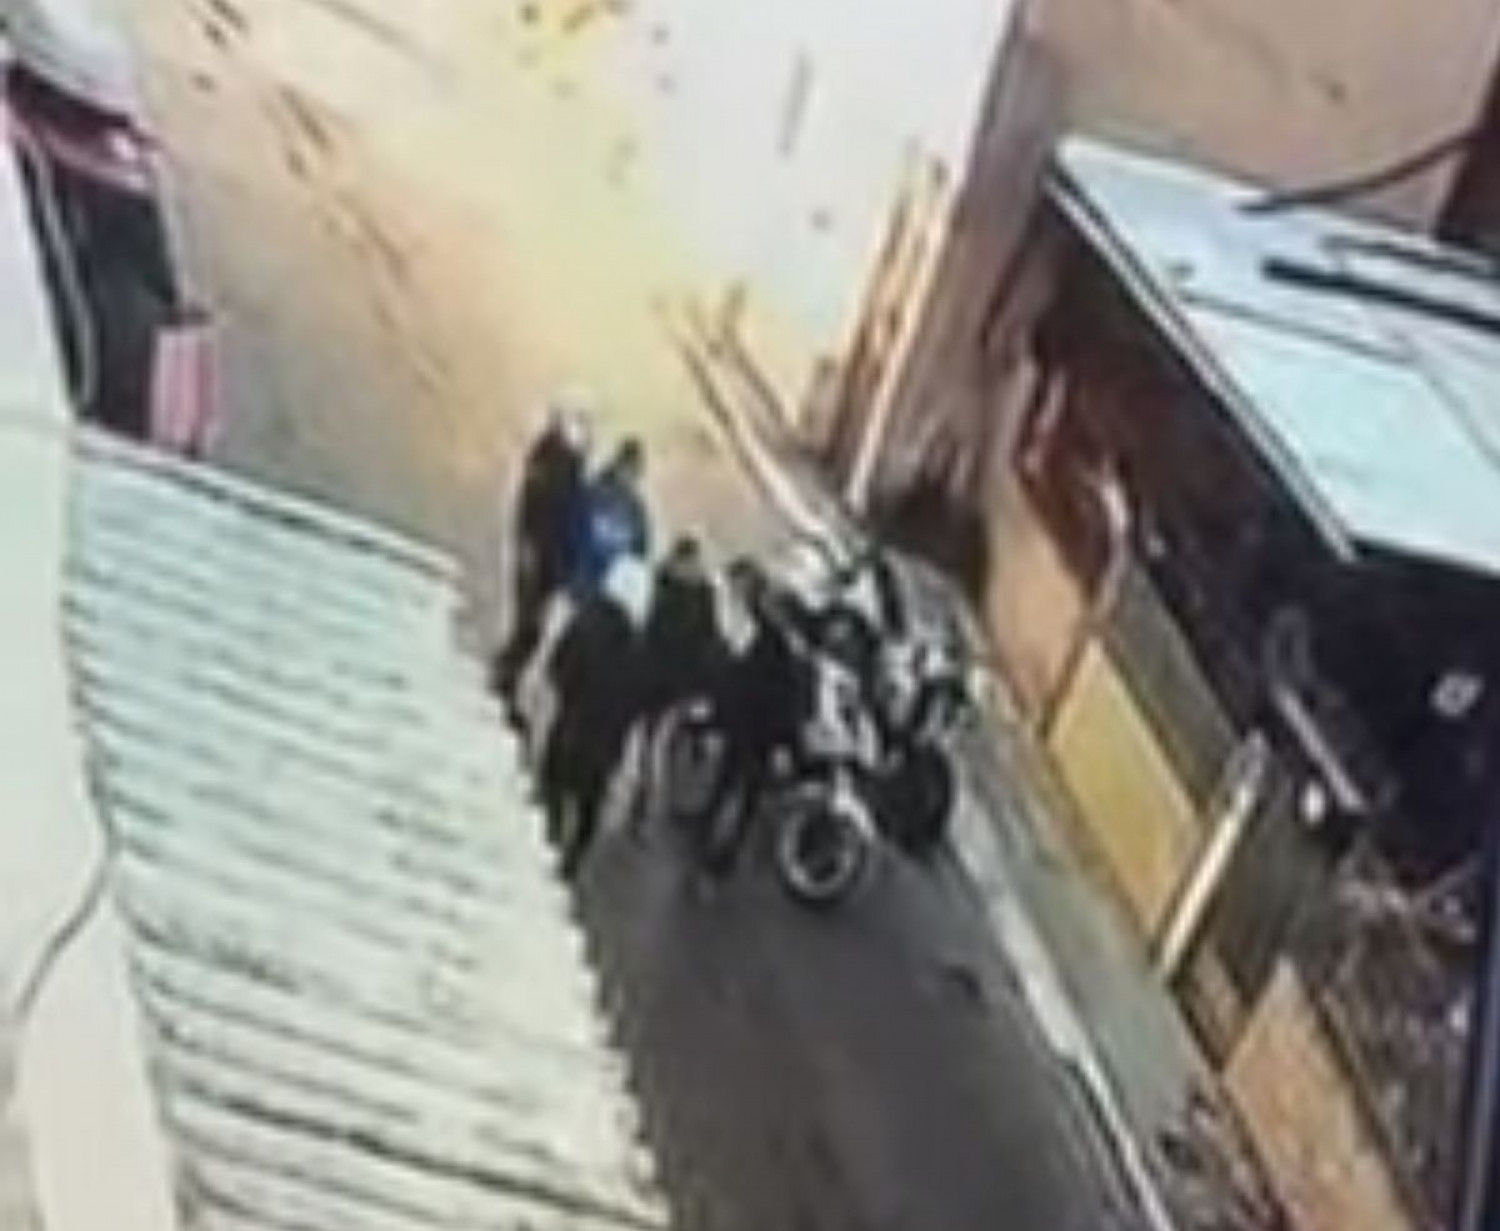 Νέο κρούσμα αστυνομικής βίας - Βίντεο με αστυνομικό που χτυπάει 11χρονο παιδί